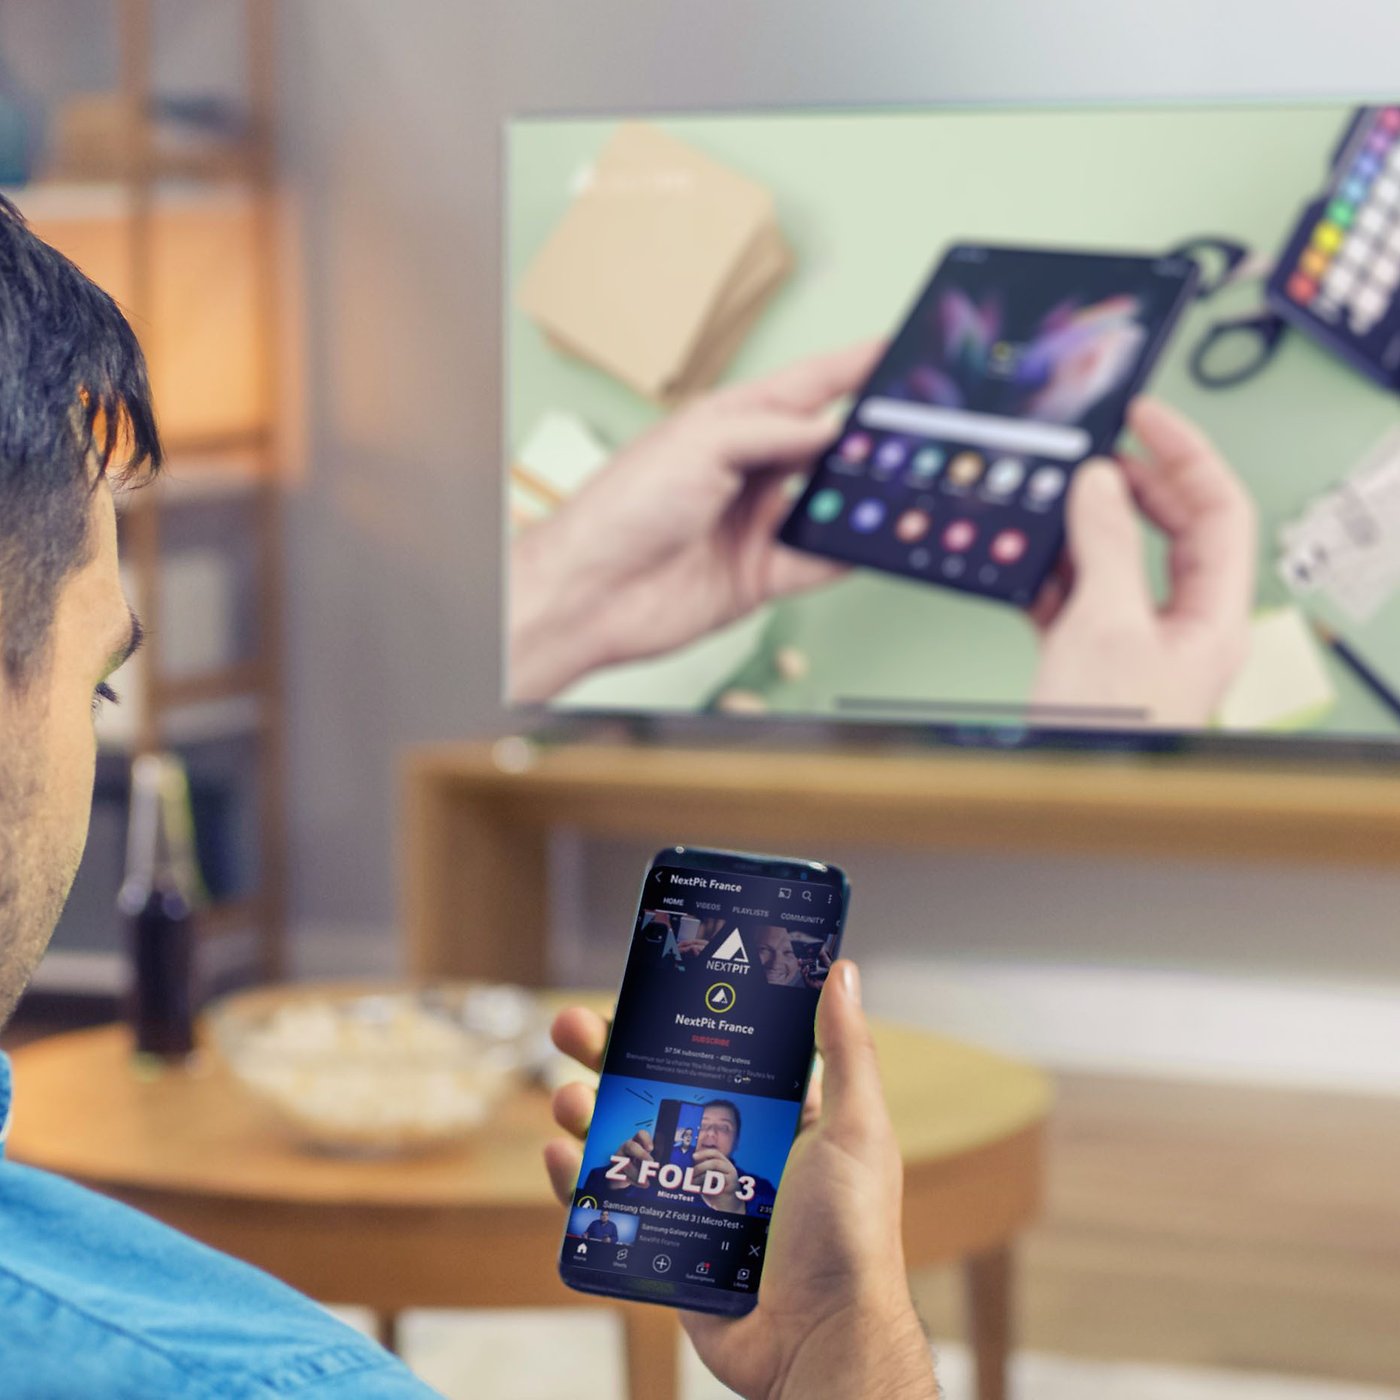 Cable adaptateur HDMI p. Téléphones portables et Tablettes Android et IOS  iPhone iPad …. - Français